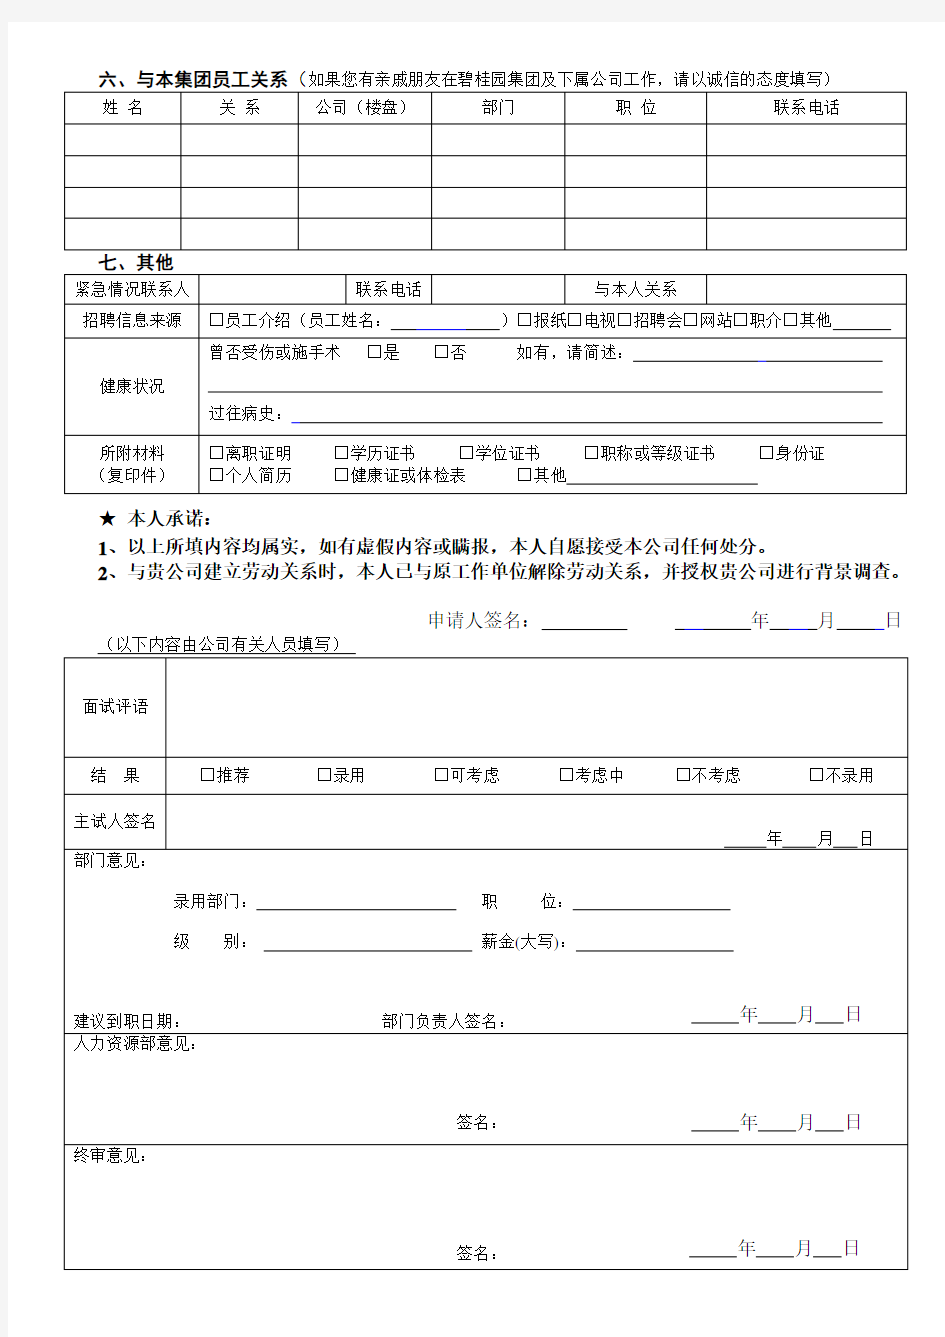 2.1 碧桂园职位申请表(样表)